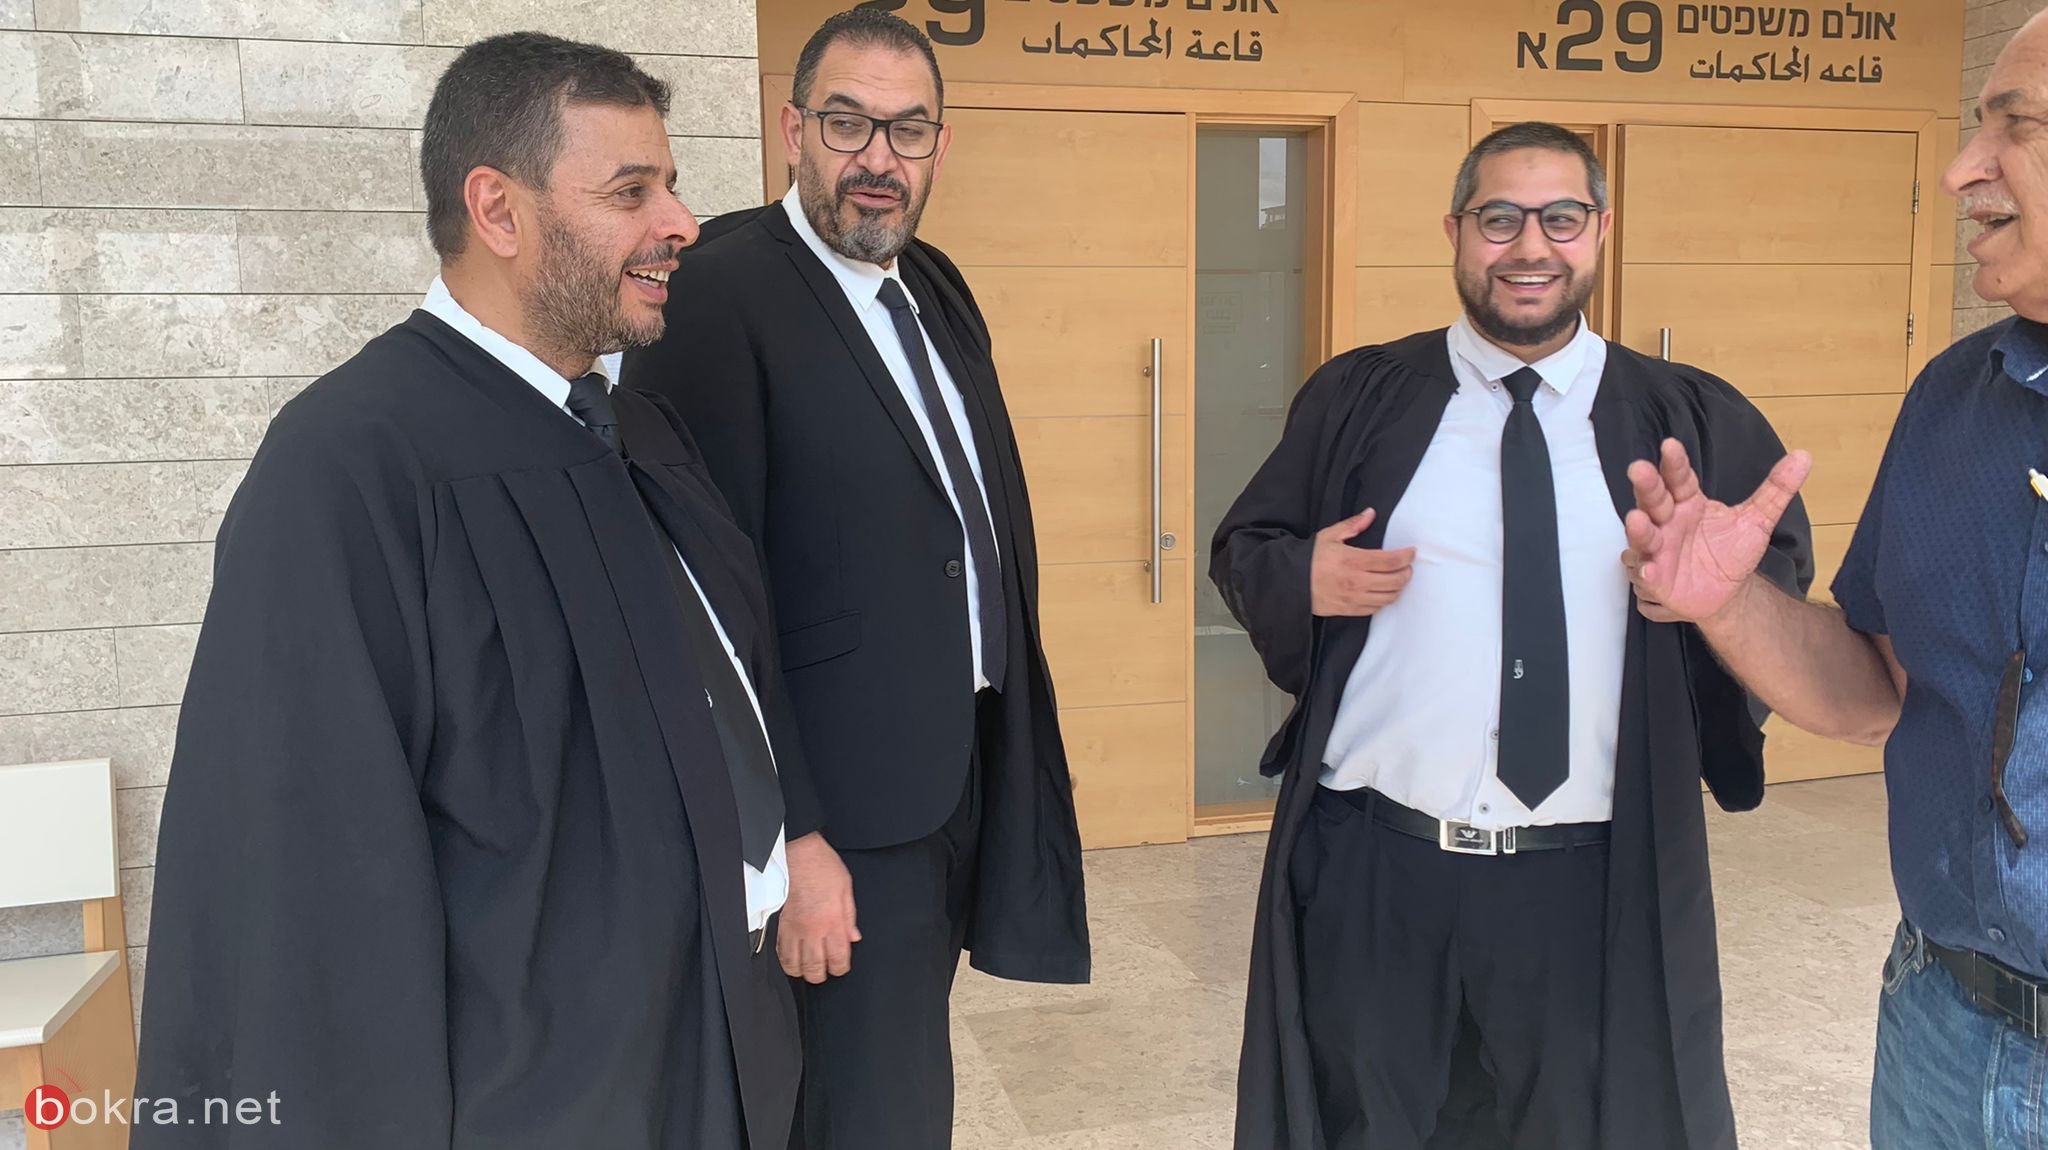 المحكمة ترفض استئناف الدفاع وتبقي الشيخ يوسف رهن الاعتقال حتى نهاية الاجراءات-1